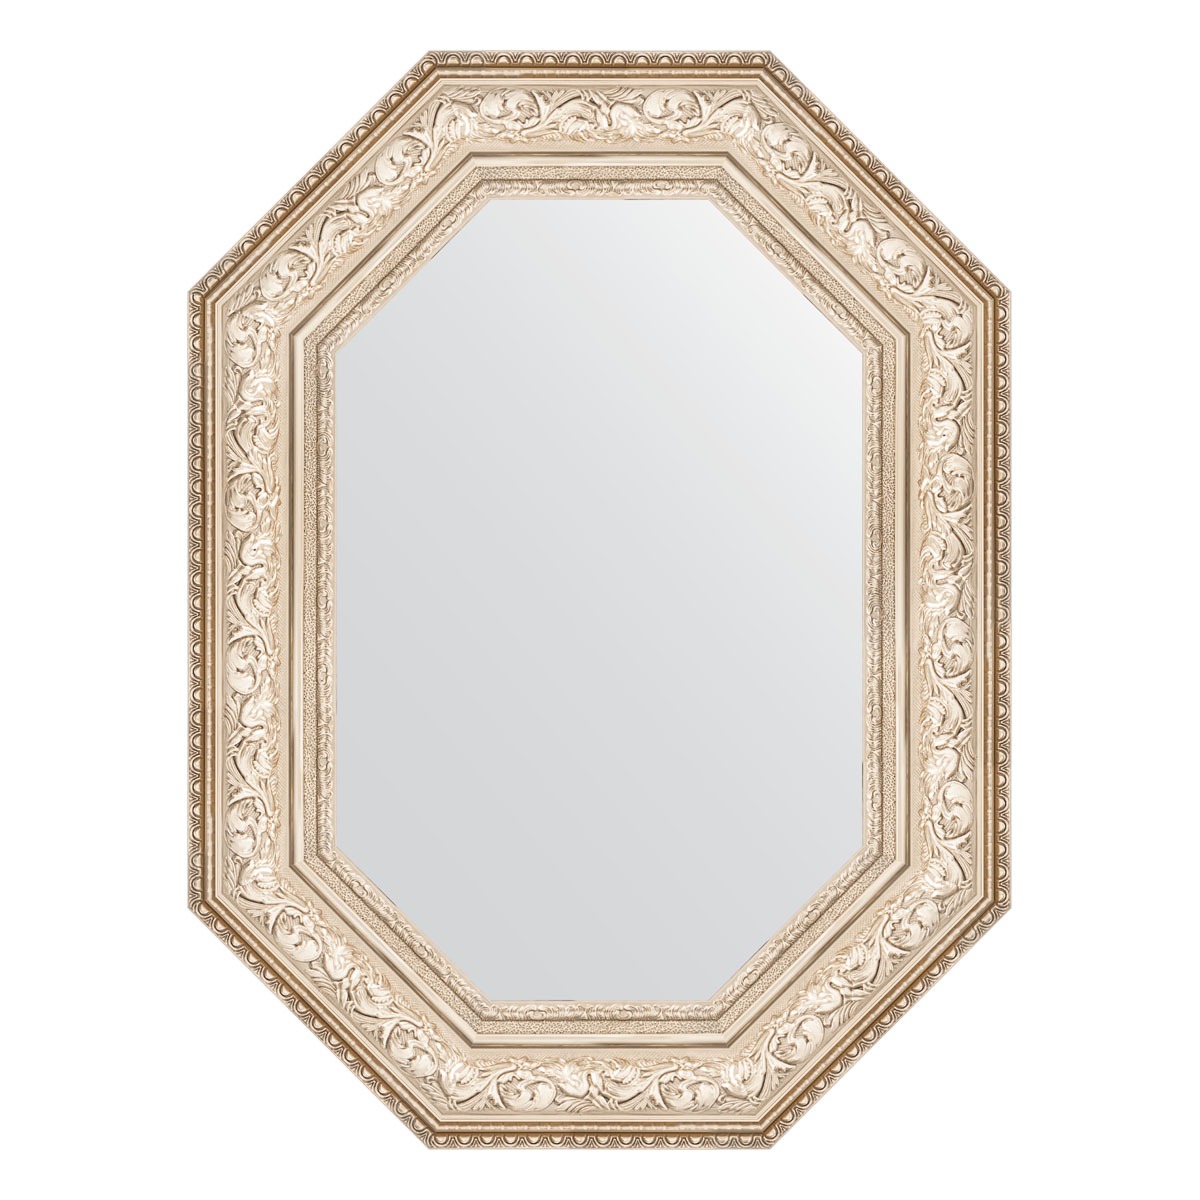 Зеркало в багетной раме Evoform виньетка серебро 109 мм 60x80 см зеркало в багетной раме виньетка серебро 109 мм 60x80 см